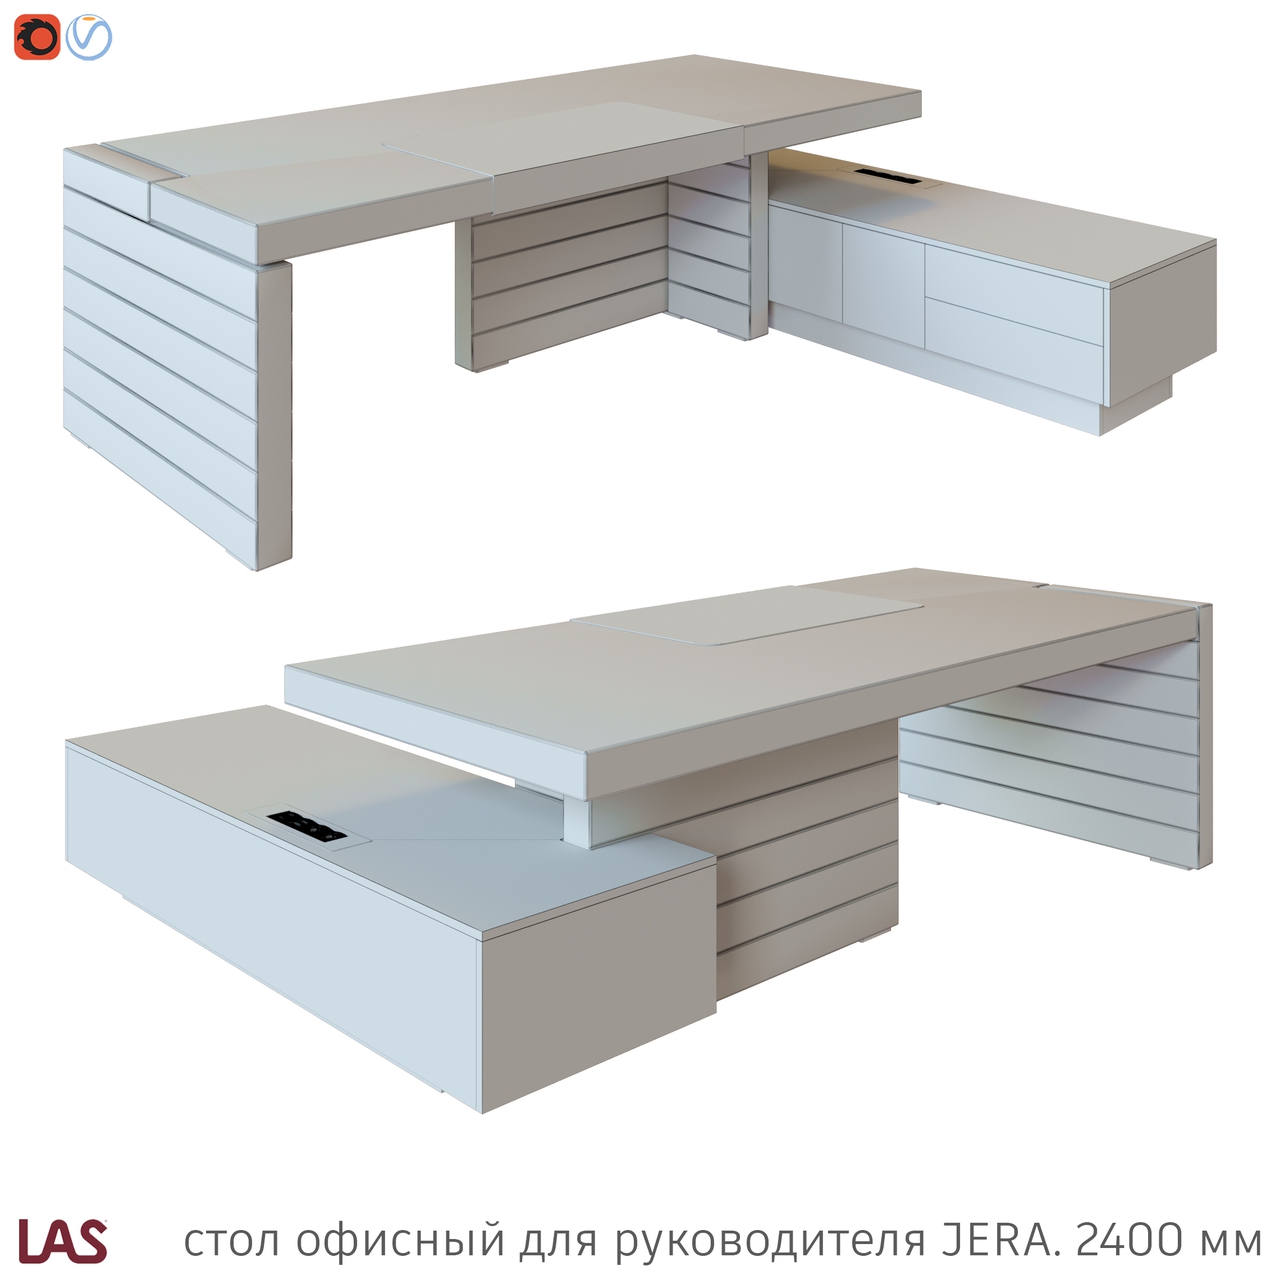 Превью G 3D-модели офисного стола LAS Jera 159955 / 159958